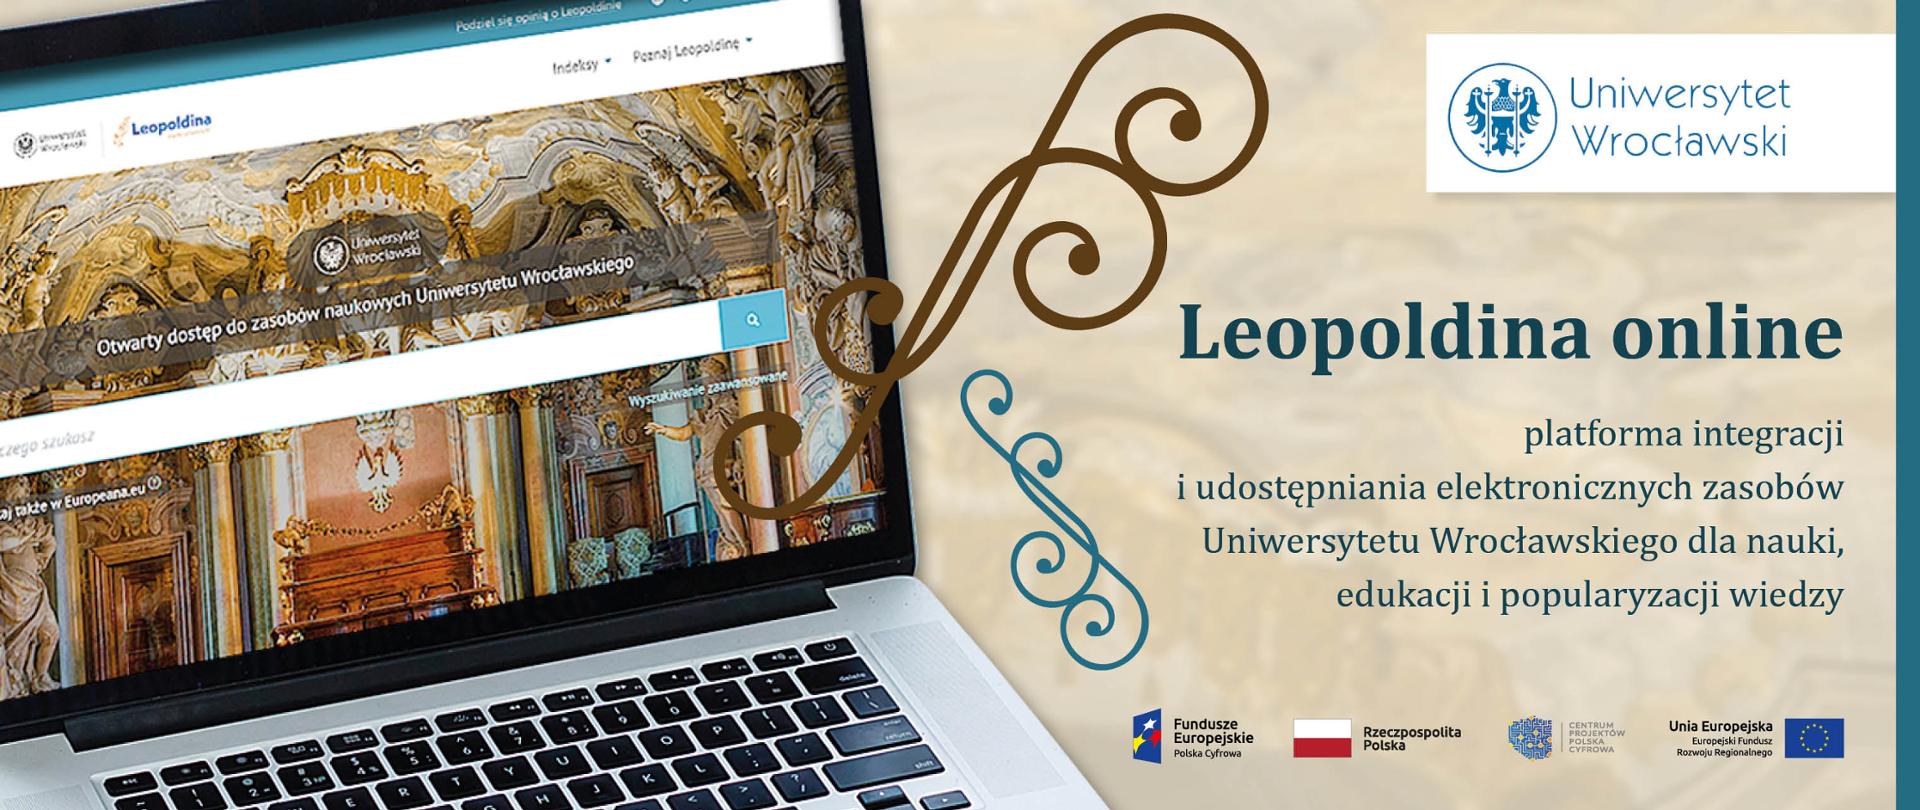 Leopoldina - Otwarty dostęp do zasobów naukowych Uniwersytetu Wrocławskiego